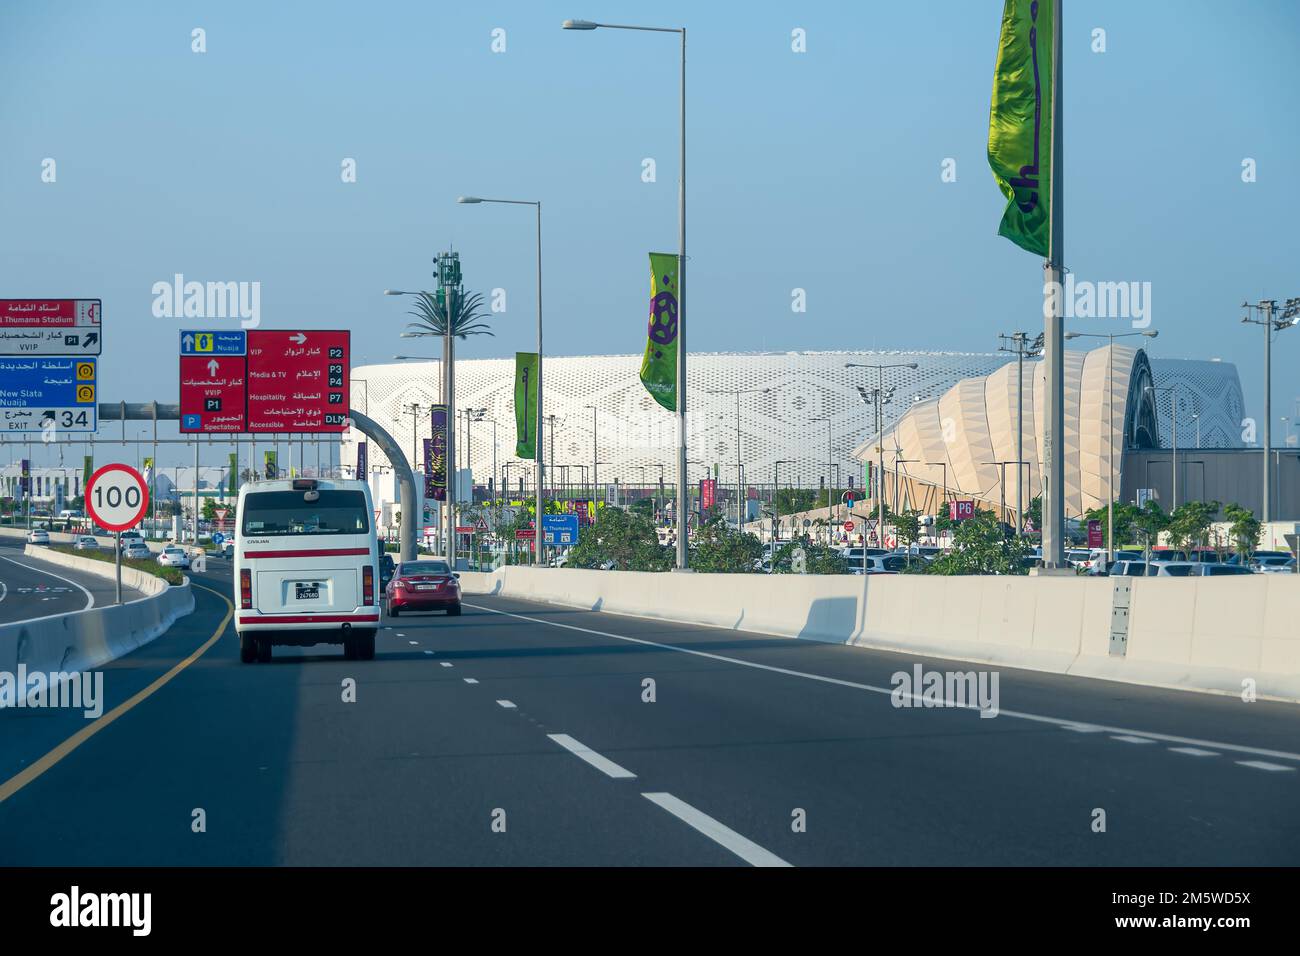 Vue générale du stade Al Thumama, l'un des sites du tournoi de football de la coupe du monde FIFA Qatar 2022. Banque D'Images